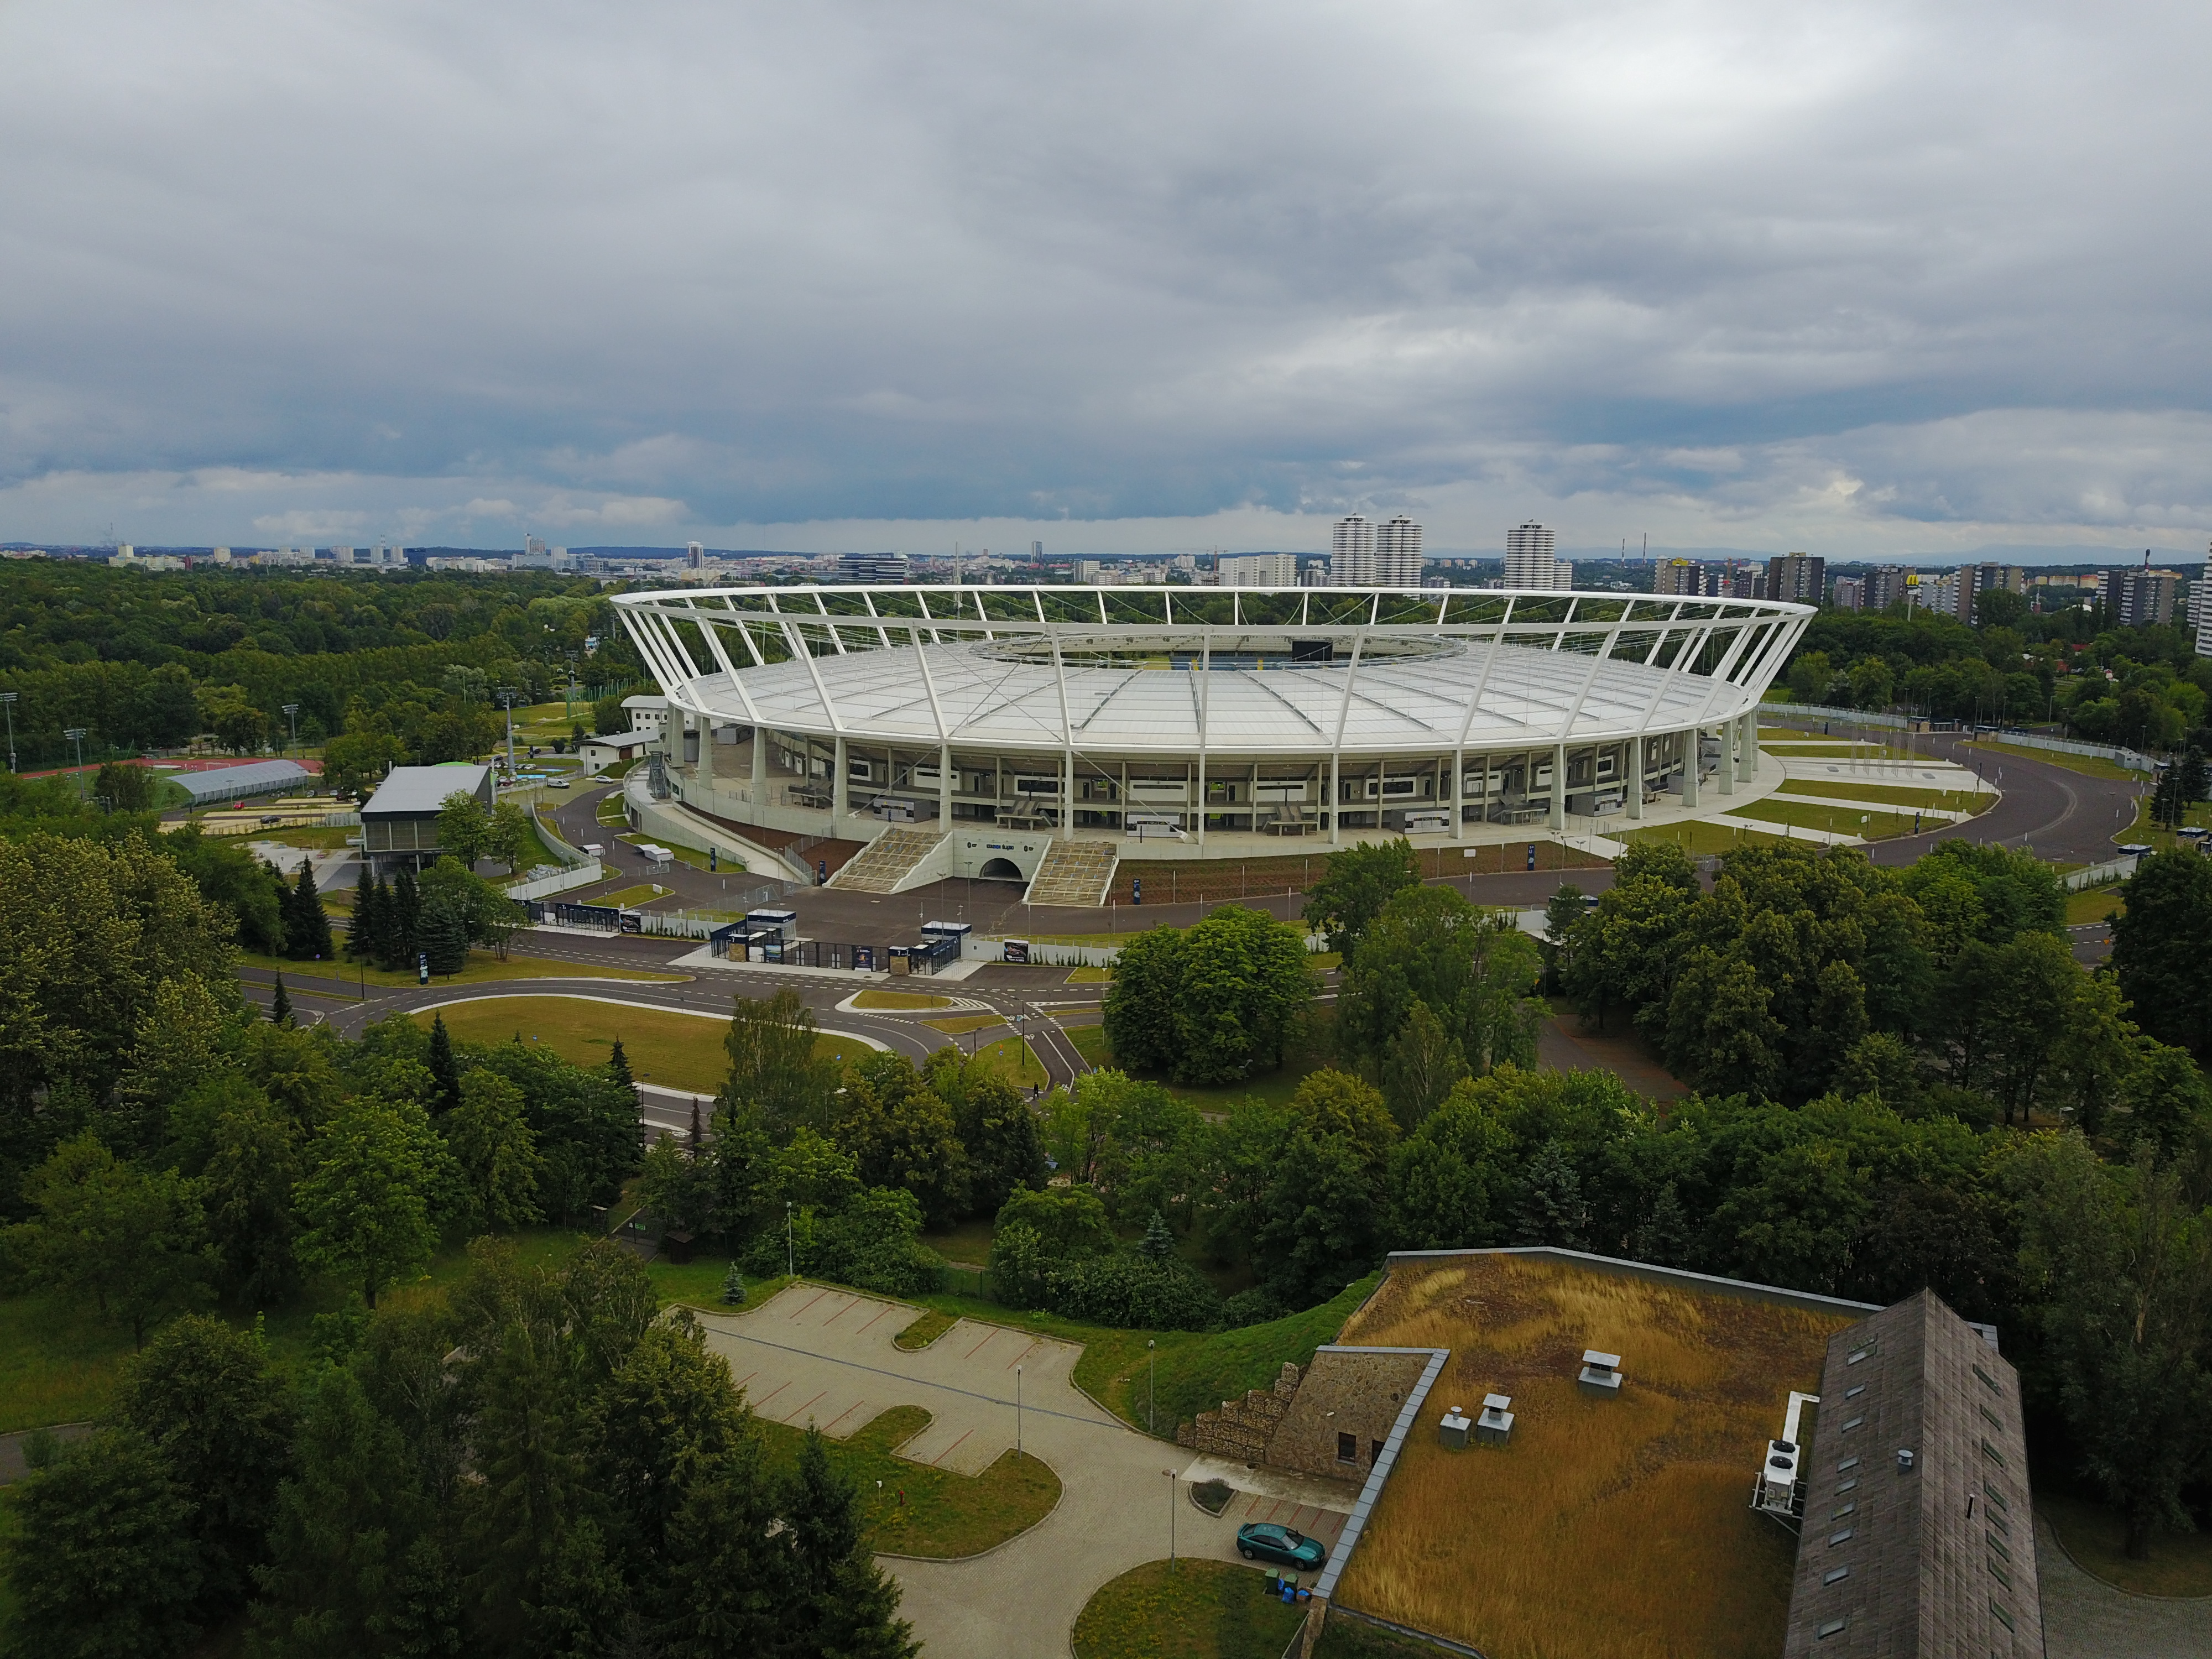 Milionový polský turnaj zná dva účastníky. Dostanou se na 50 tisícový stadion i tuzemští hráči?